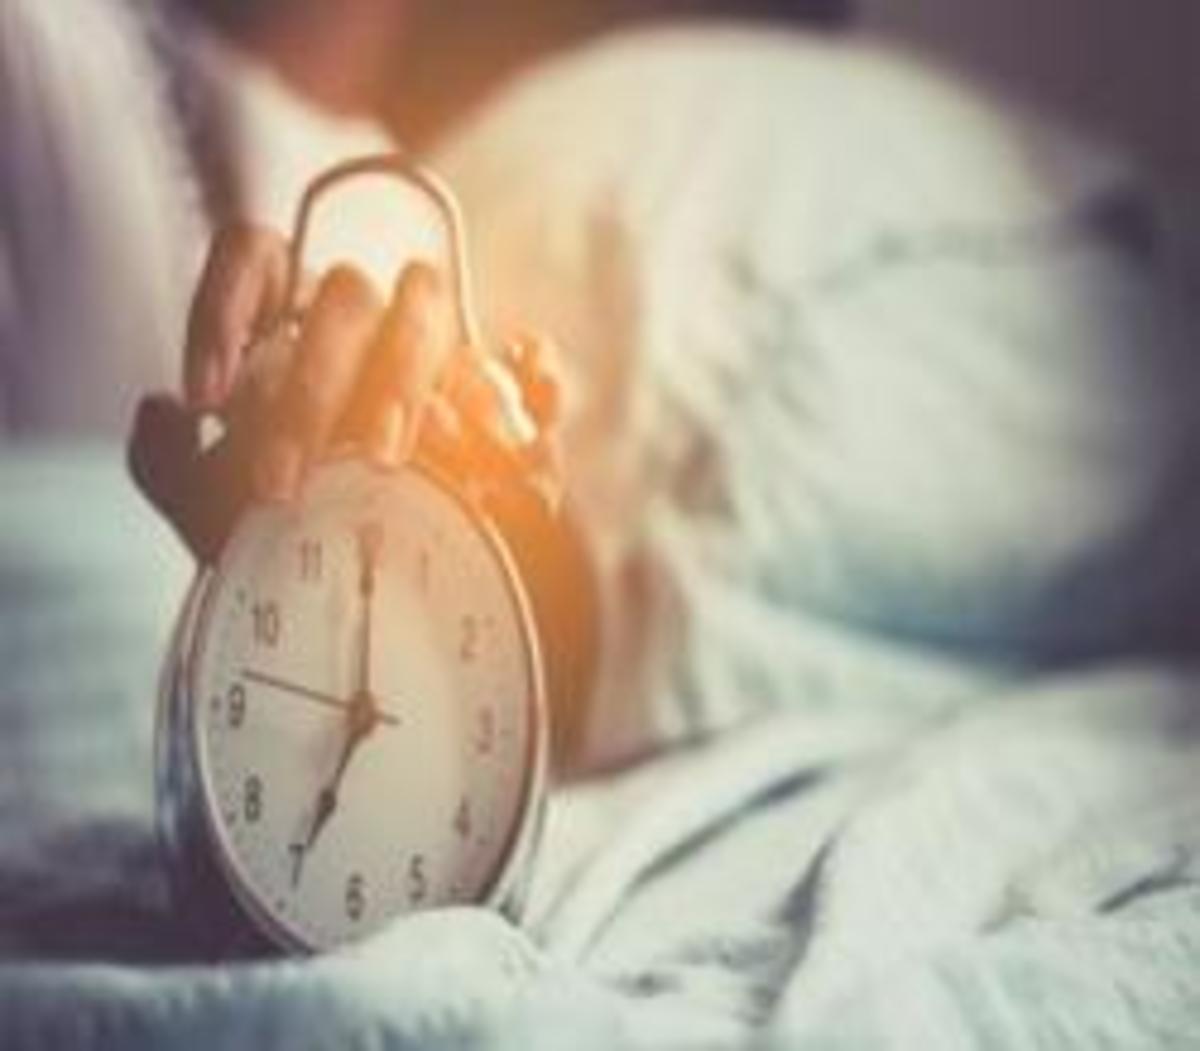 خواب بیش از حد و خطر ابتلا به 7 عارضه جسمی و روانی